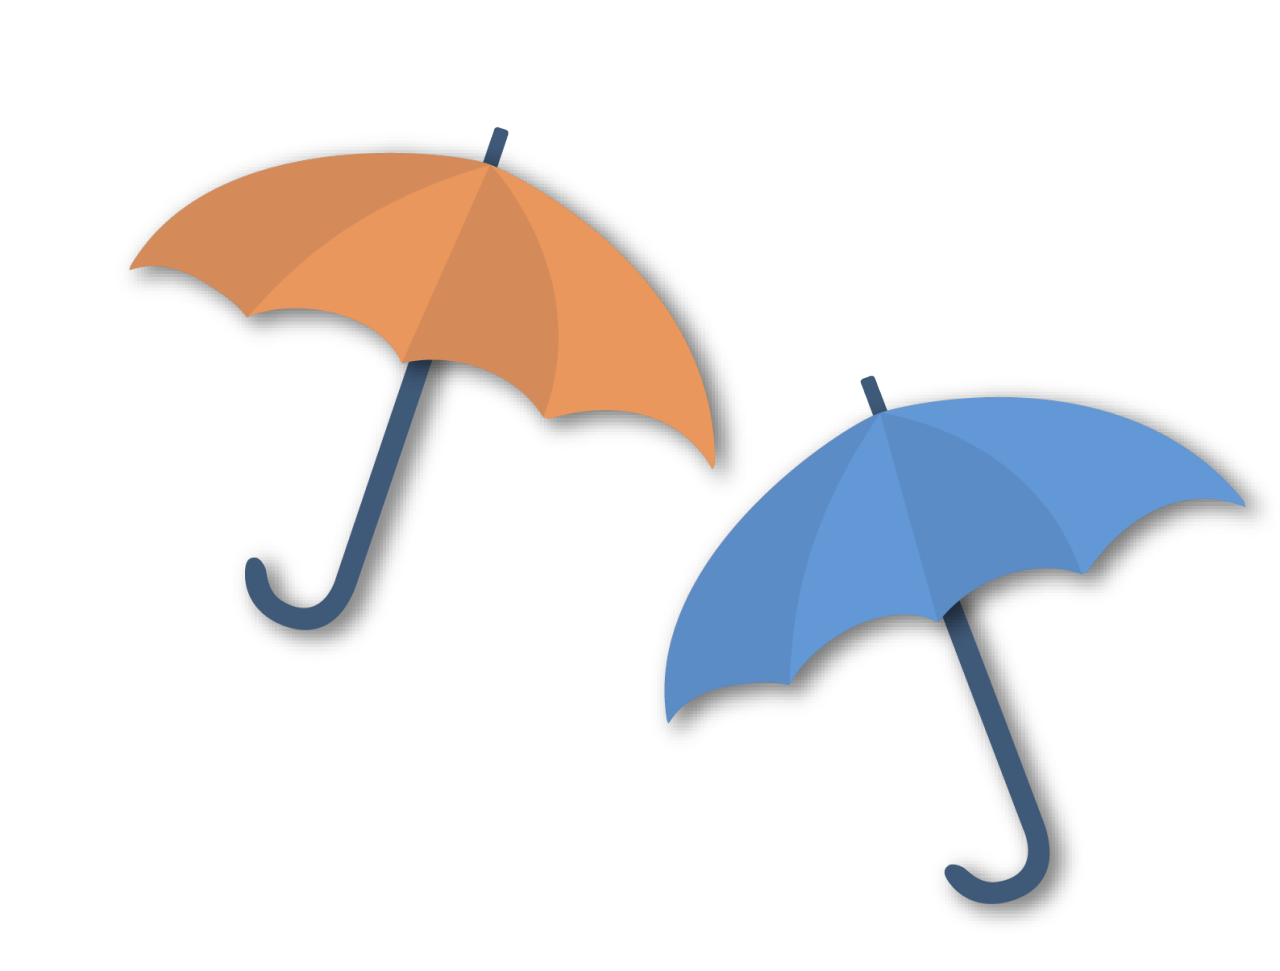 ORange and blue umbrellas